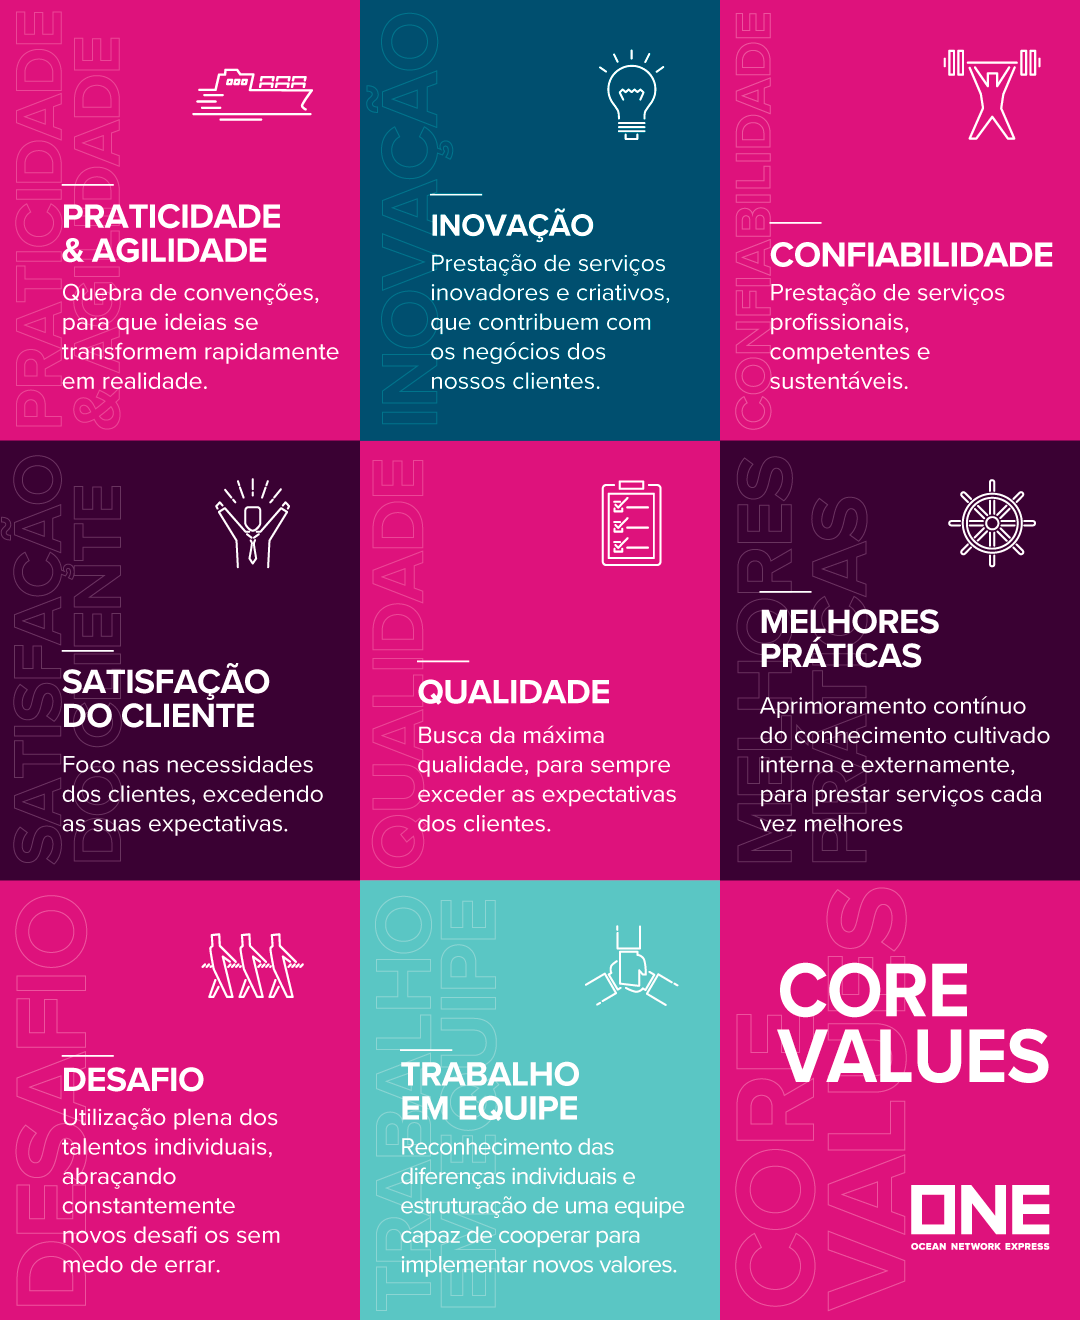 CoreValues_Website_Portuguese